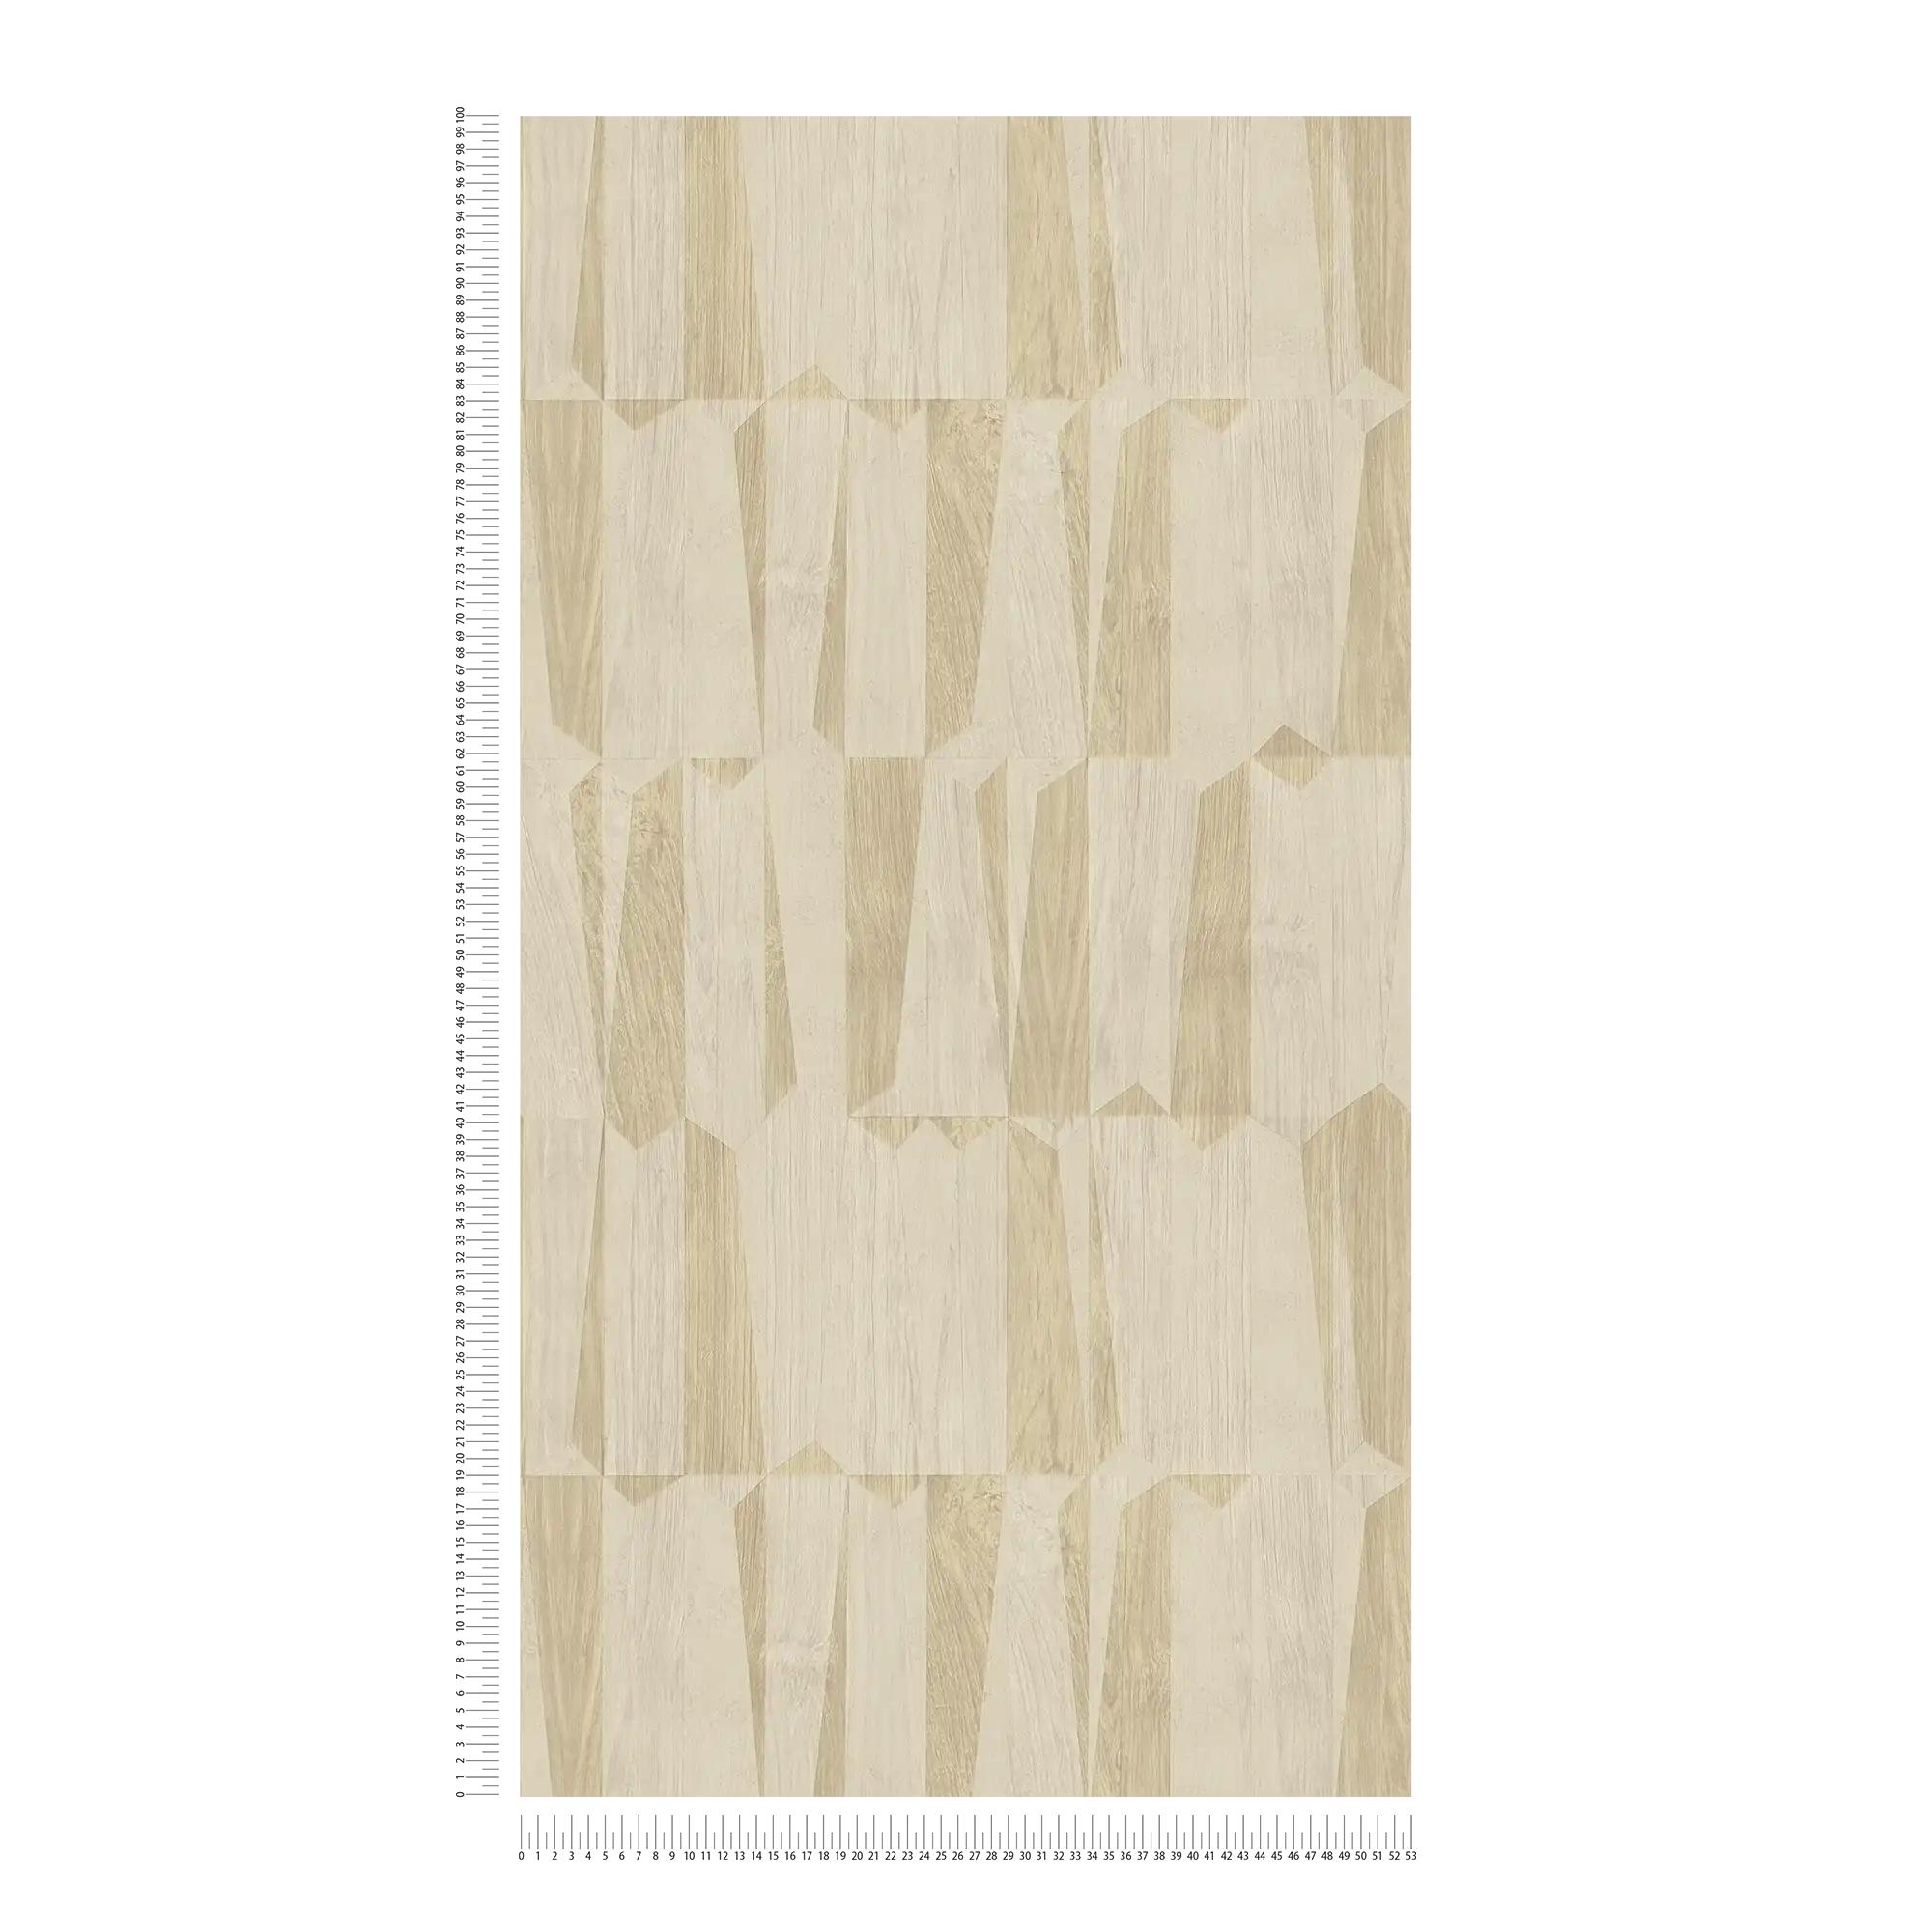             Carta da parati metallizzata con effetto legno in un motivo a sfaccettature - beige, grigio
        